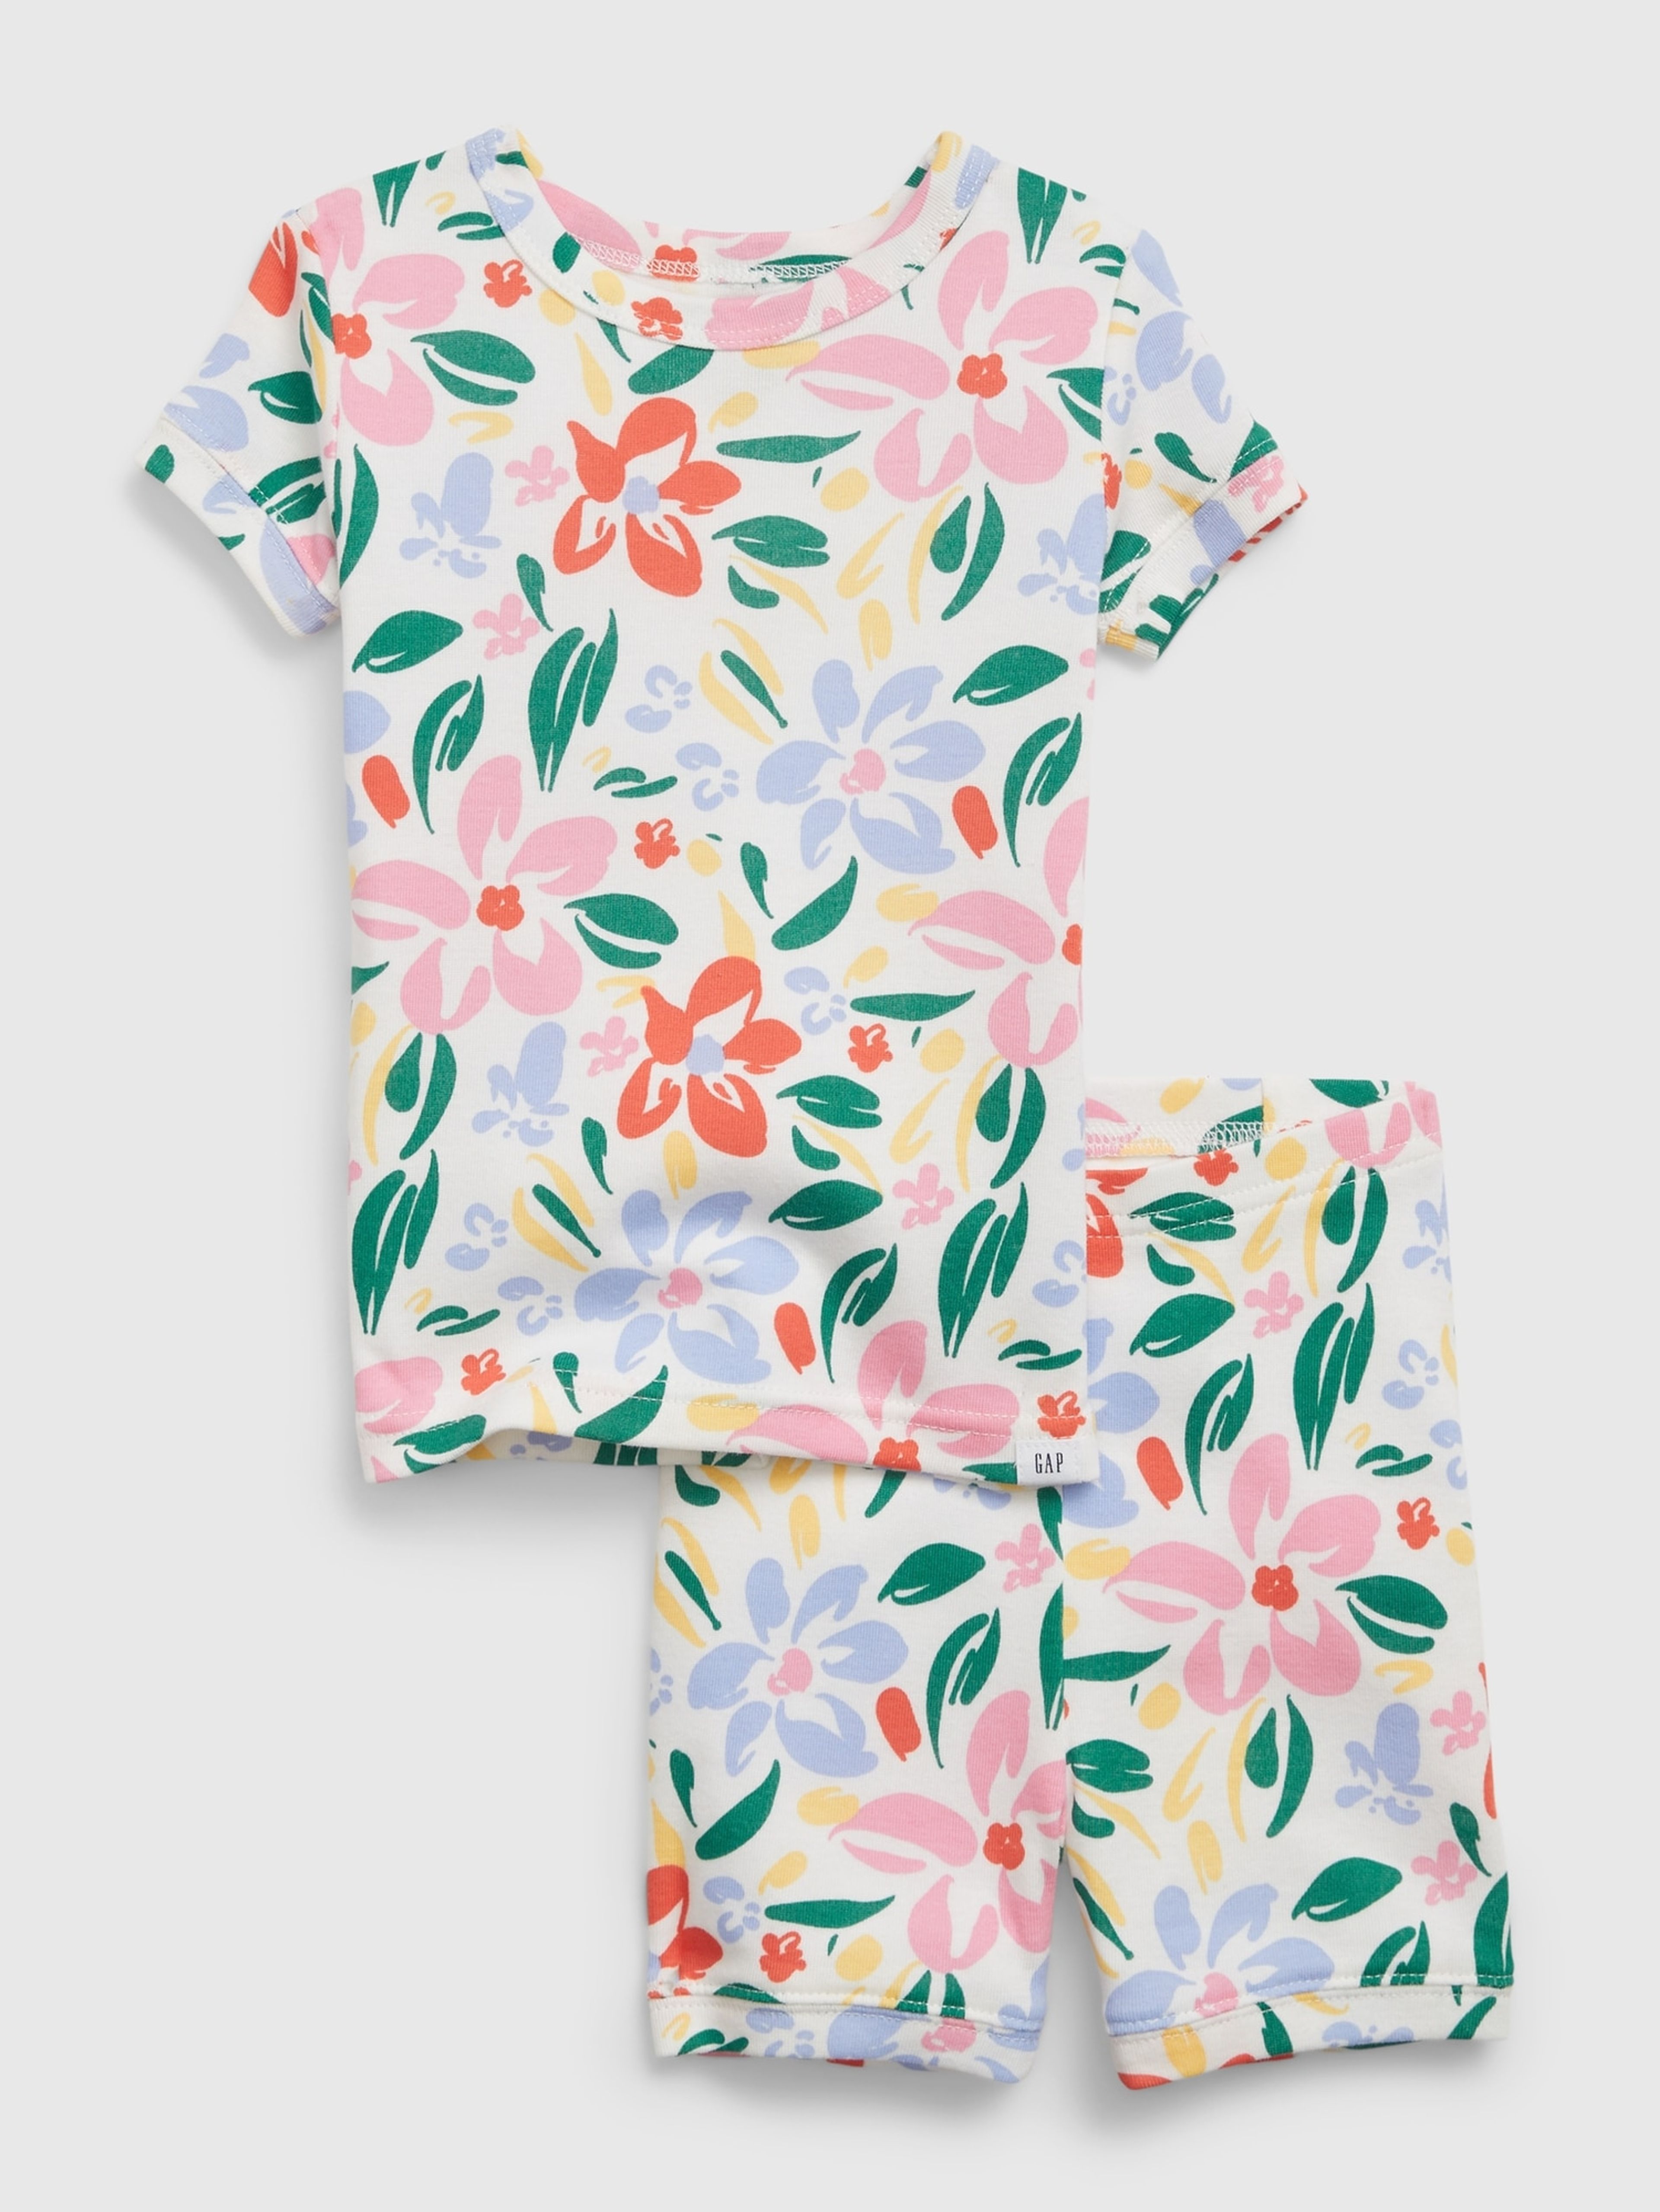 Dětské krátké pyžamo floral